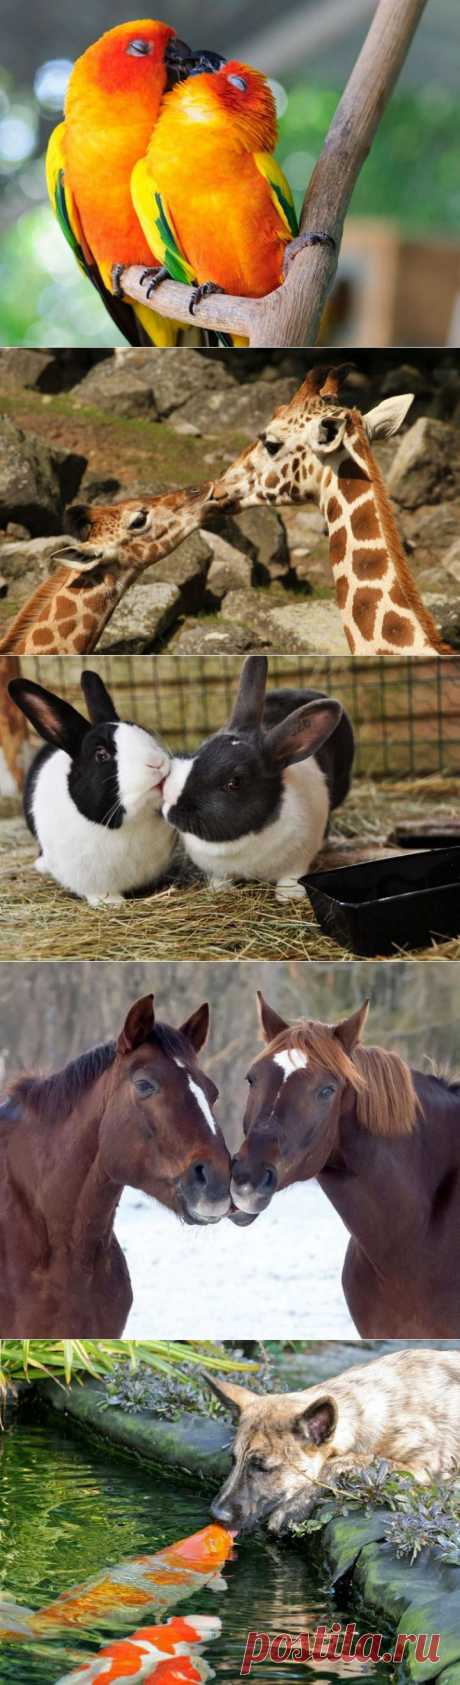 (+1) тема - 15 очаровательных поцелуев среди животных | ЛЮБИМЫЕ ФОТО